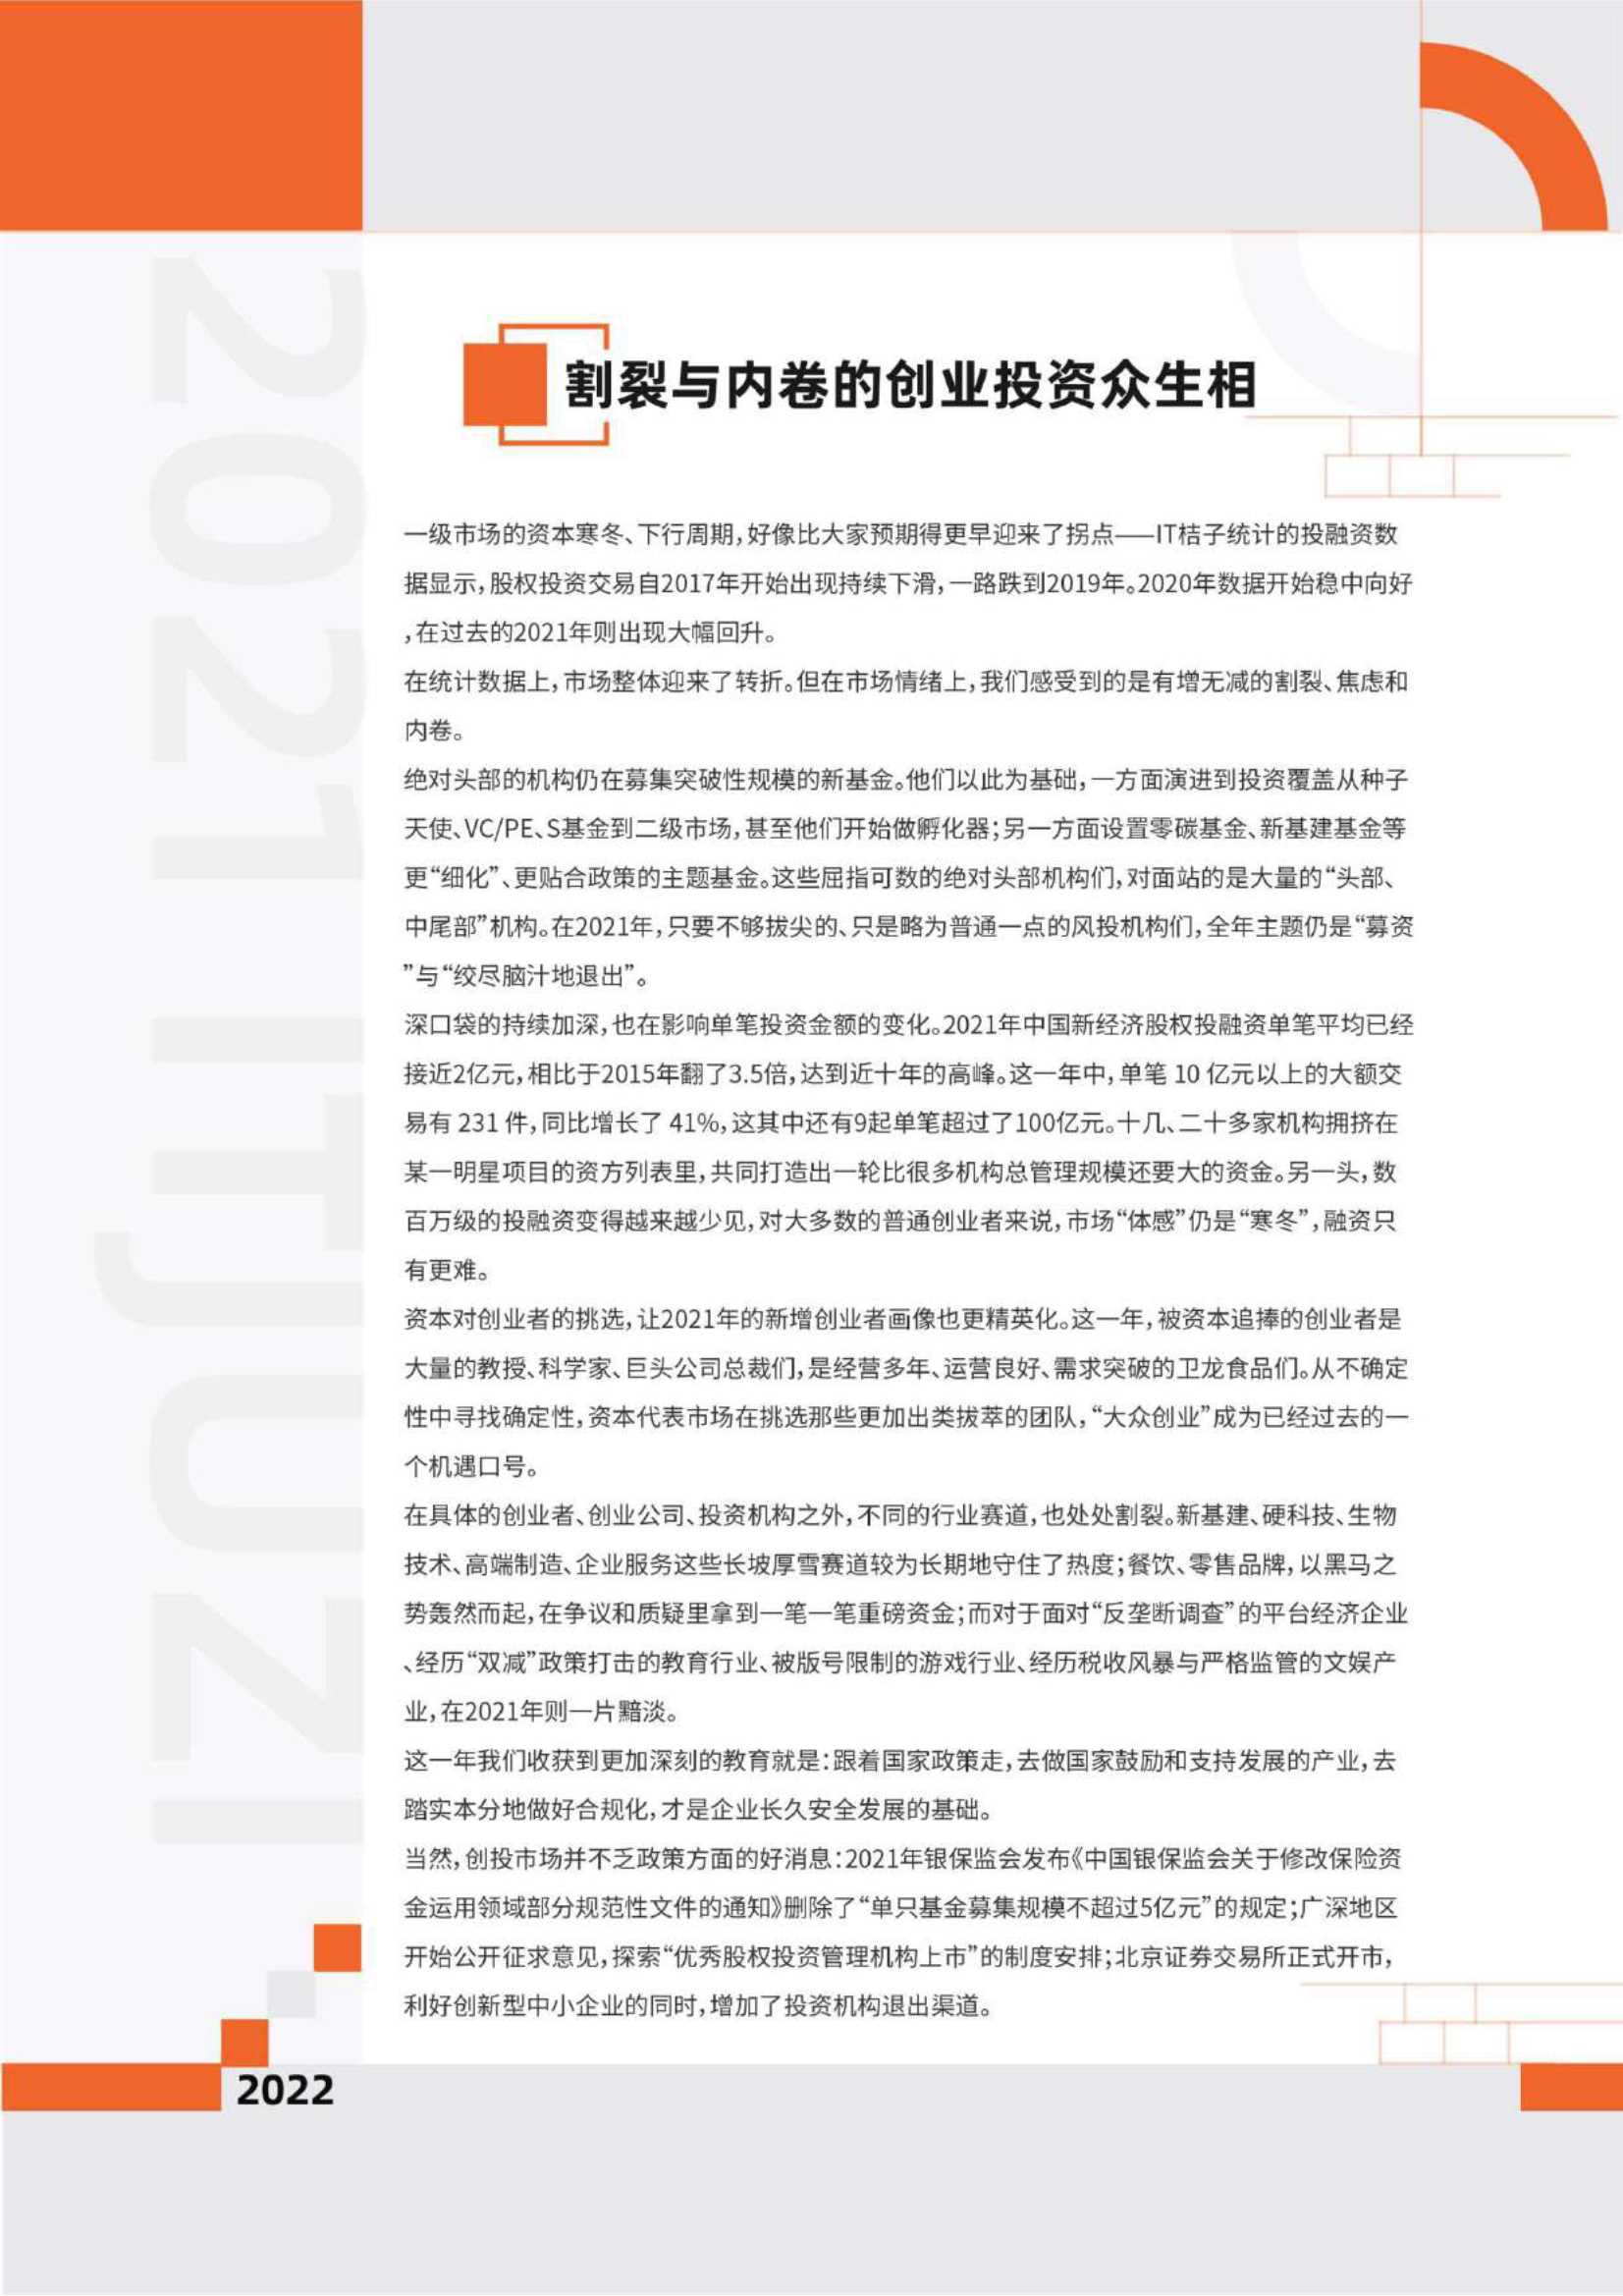 IT桔子-2021-2022中国新经济创业投资报告（精华版）-2022.02-80页